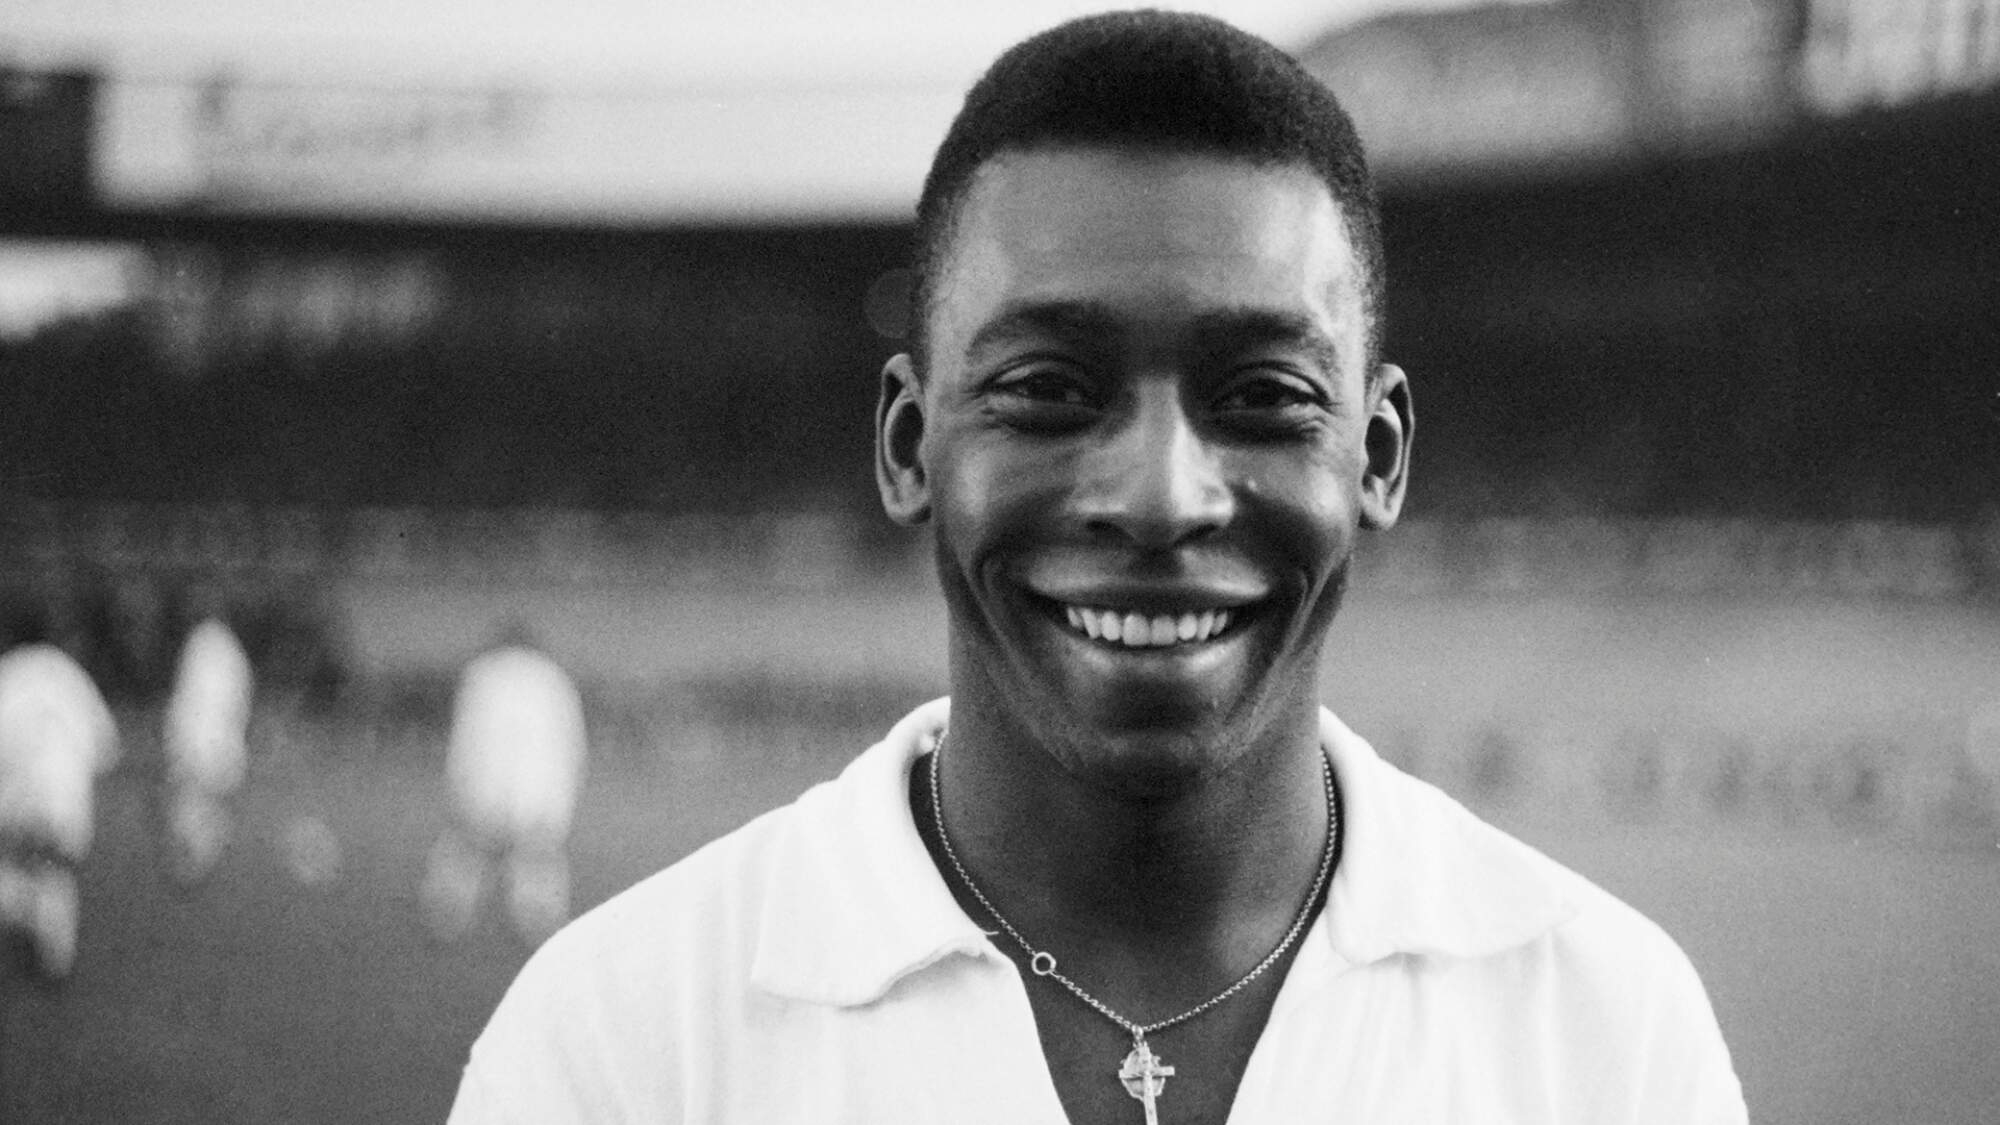 Rei do futebol, Pelé completa 82 anos neste domingo - Gazeta Esportiva